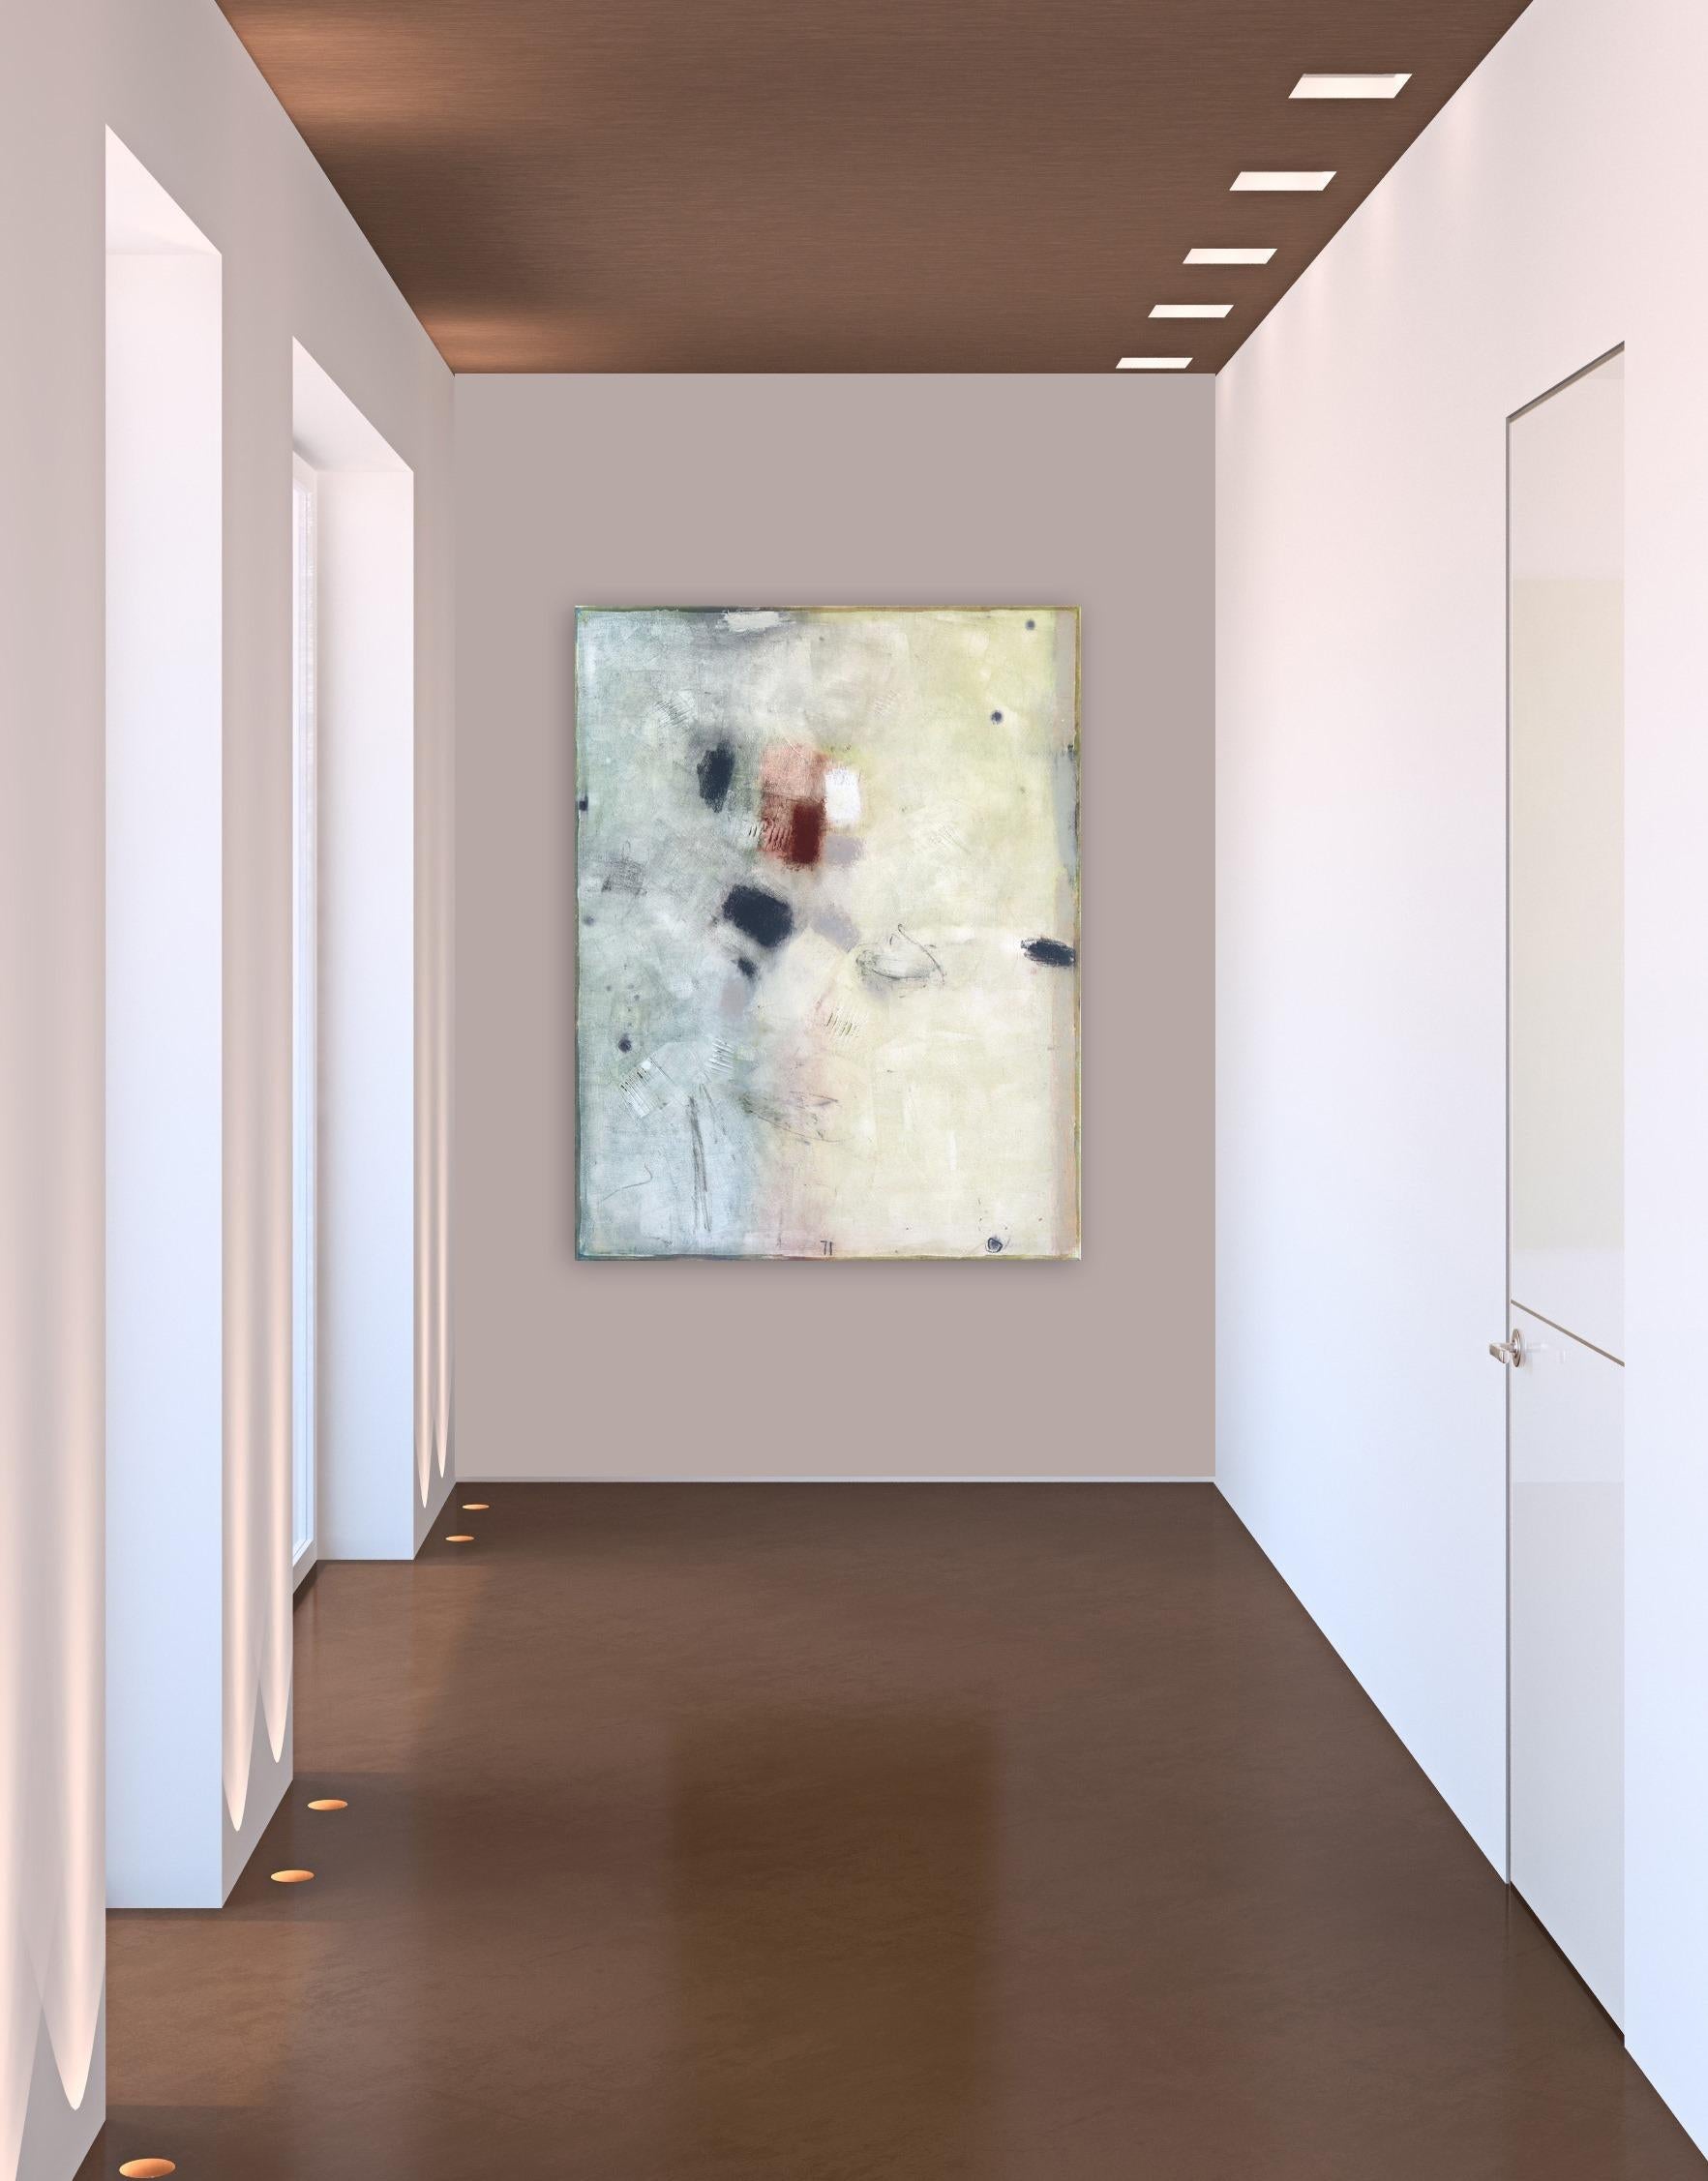 Bernhard Zimmer schafft tief geschichtete, subtil strukturierte abstrakte Gemälde, die diametral entgegengesetzte Elemente - Ordnung und Chaos, Abstraktion und Darstellung, Kühnheit und Subtilität - in exquisiter Spannung enthalten. Er arbeitet mit